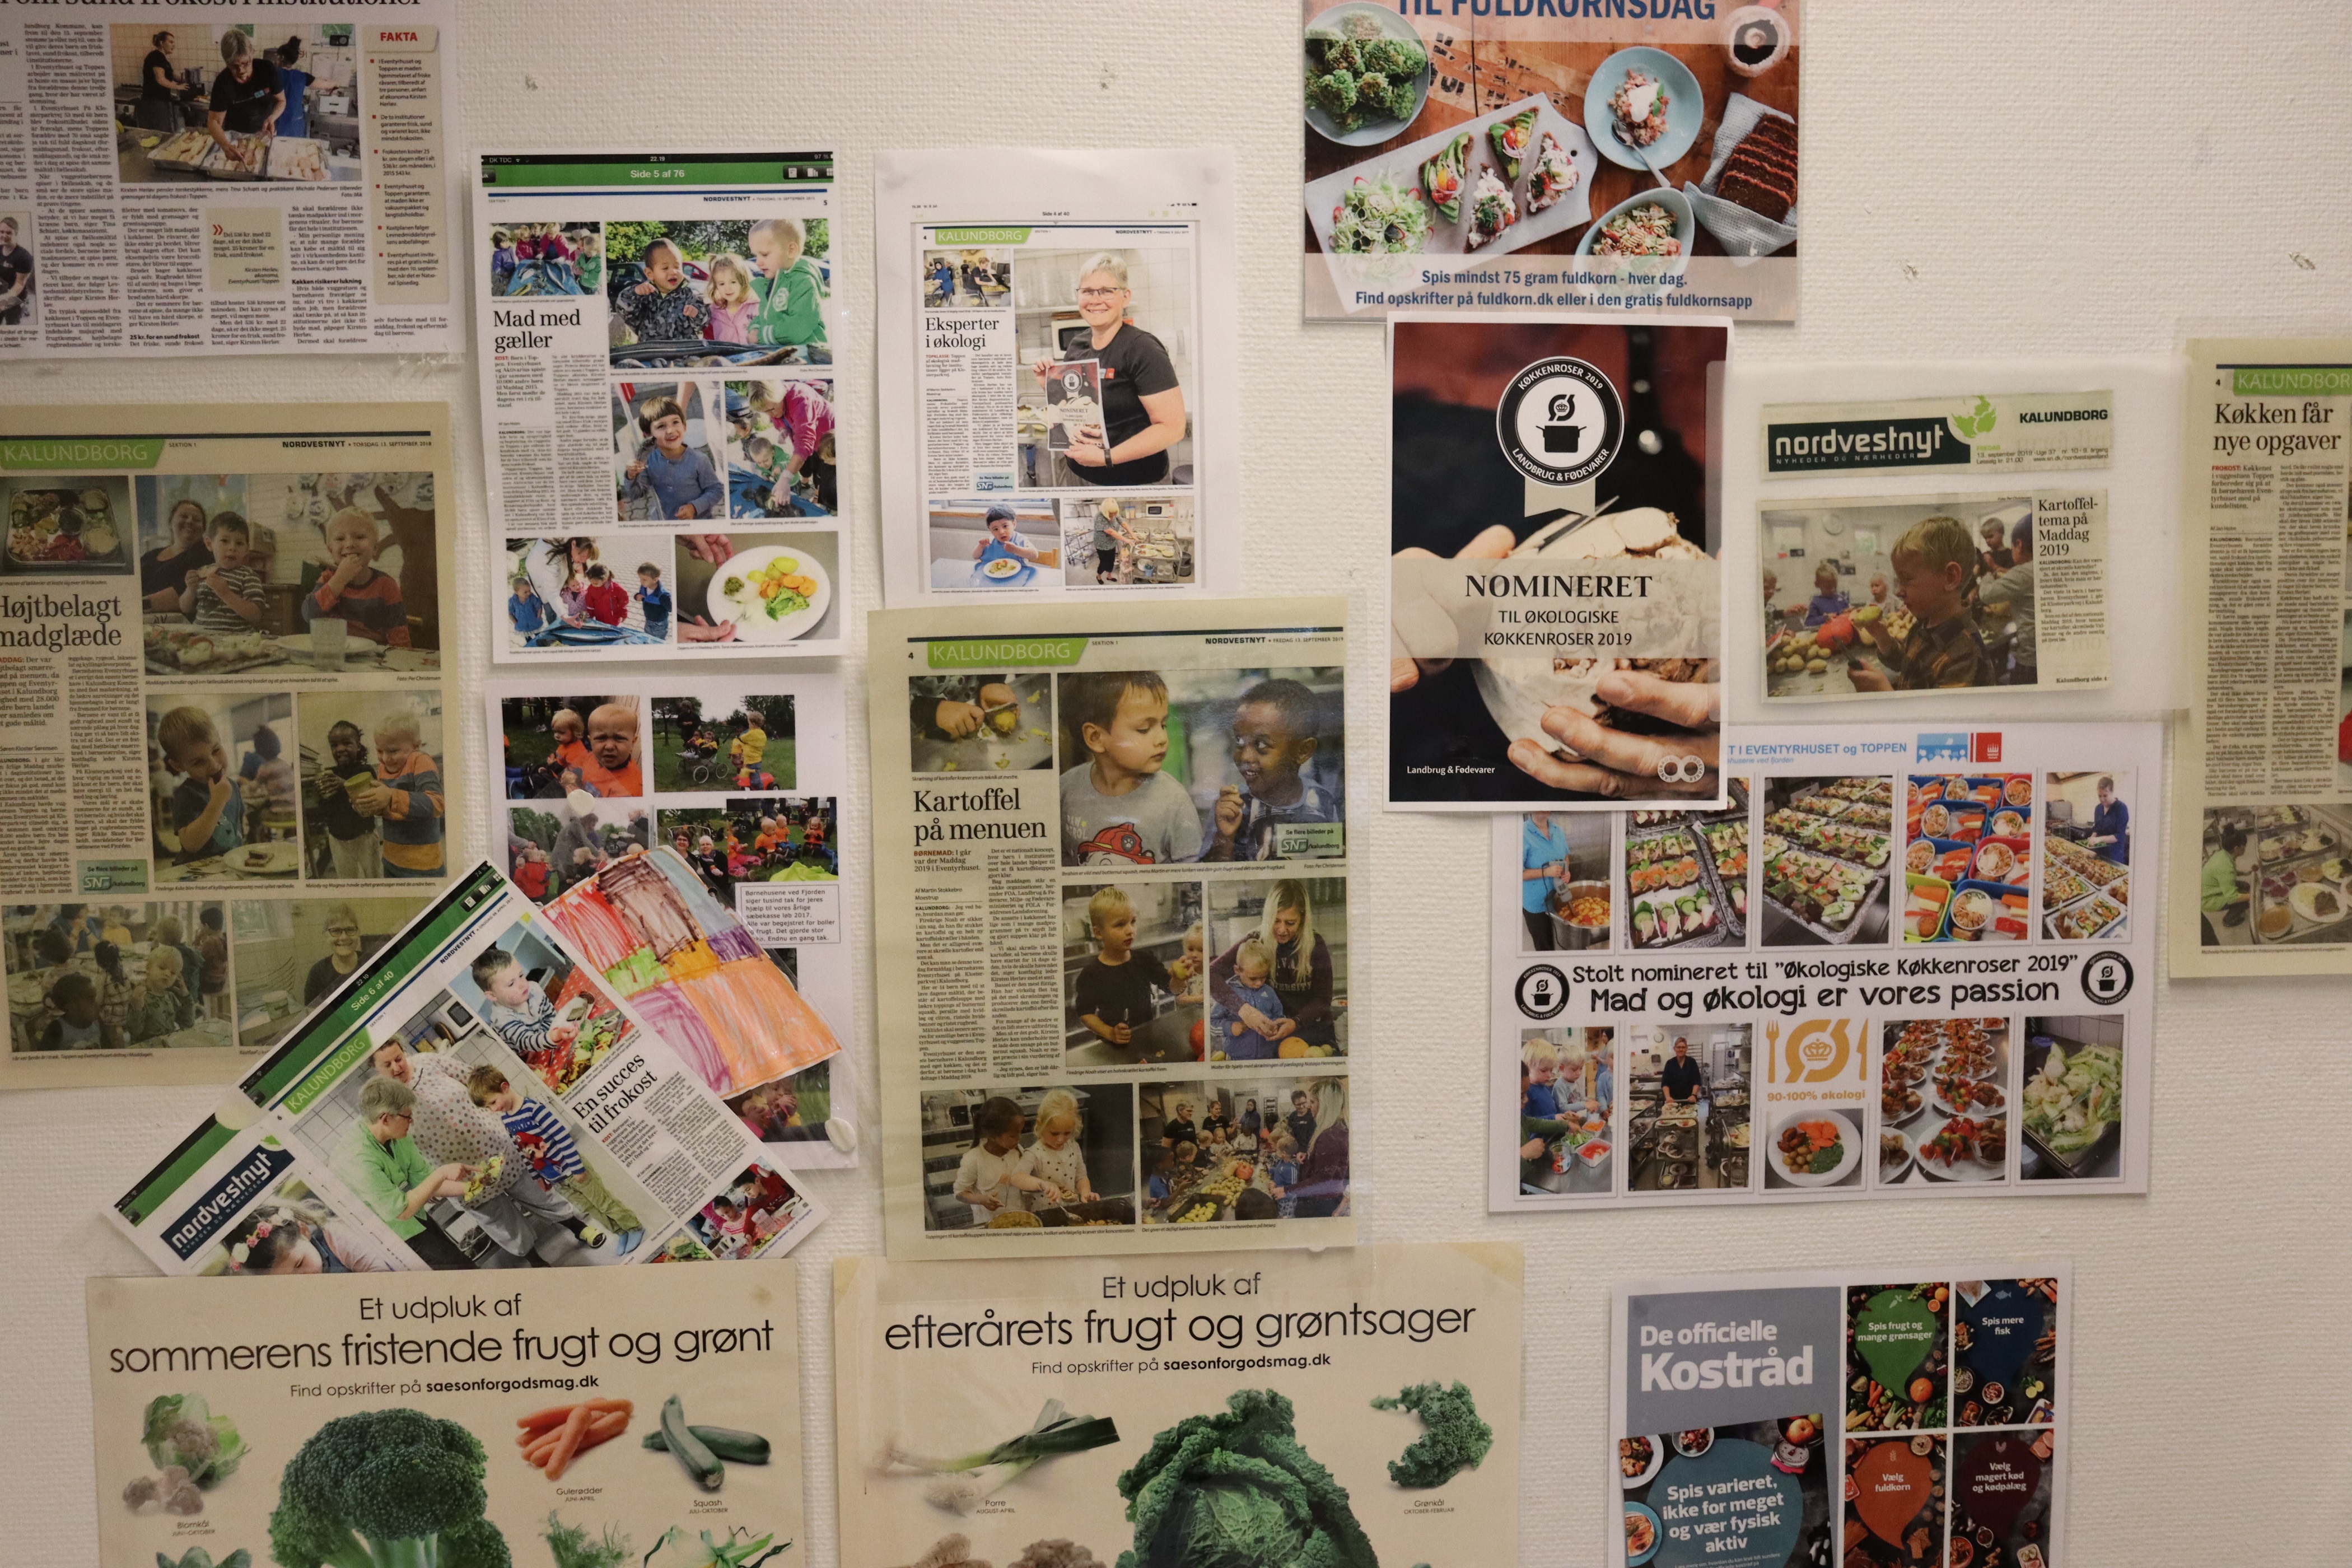 Køkkenets væg med avis artikler med positiv omtale om netop køkkenet